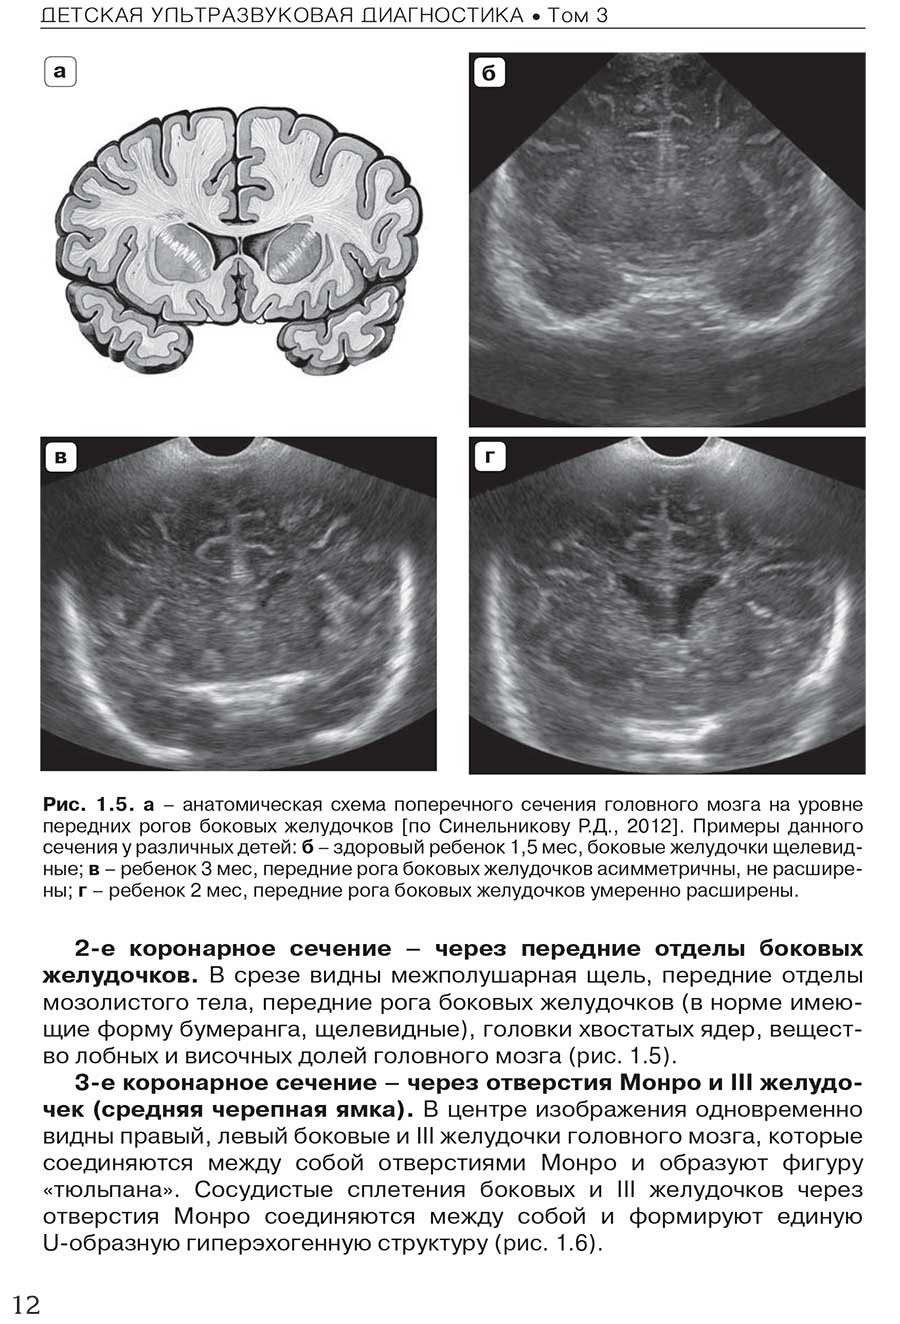 Рис. 1.5. а - анатомическая схема поперечного сечения головного мозга